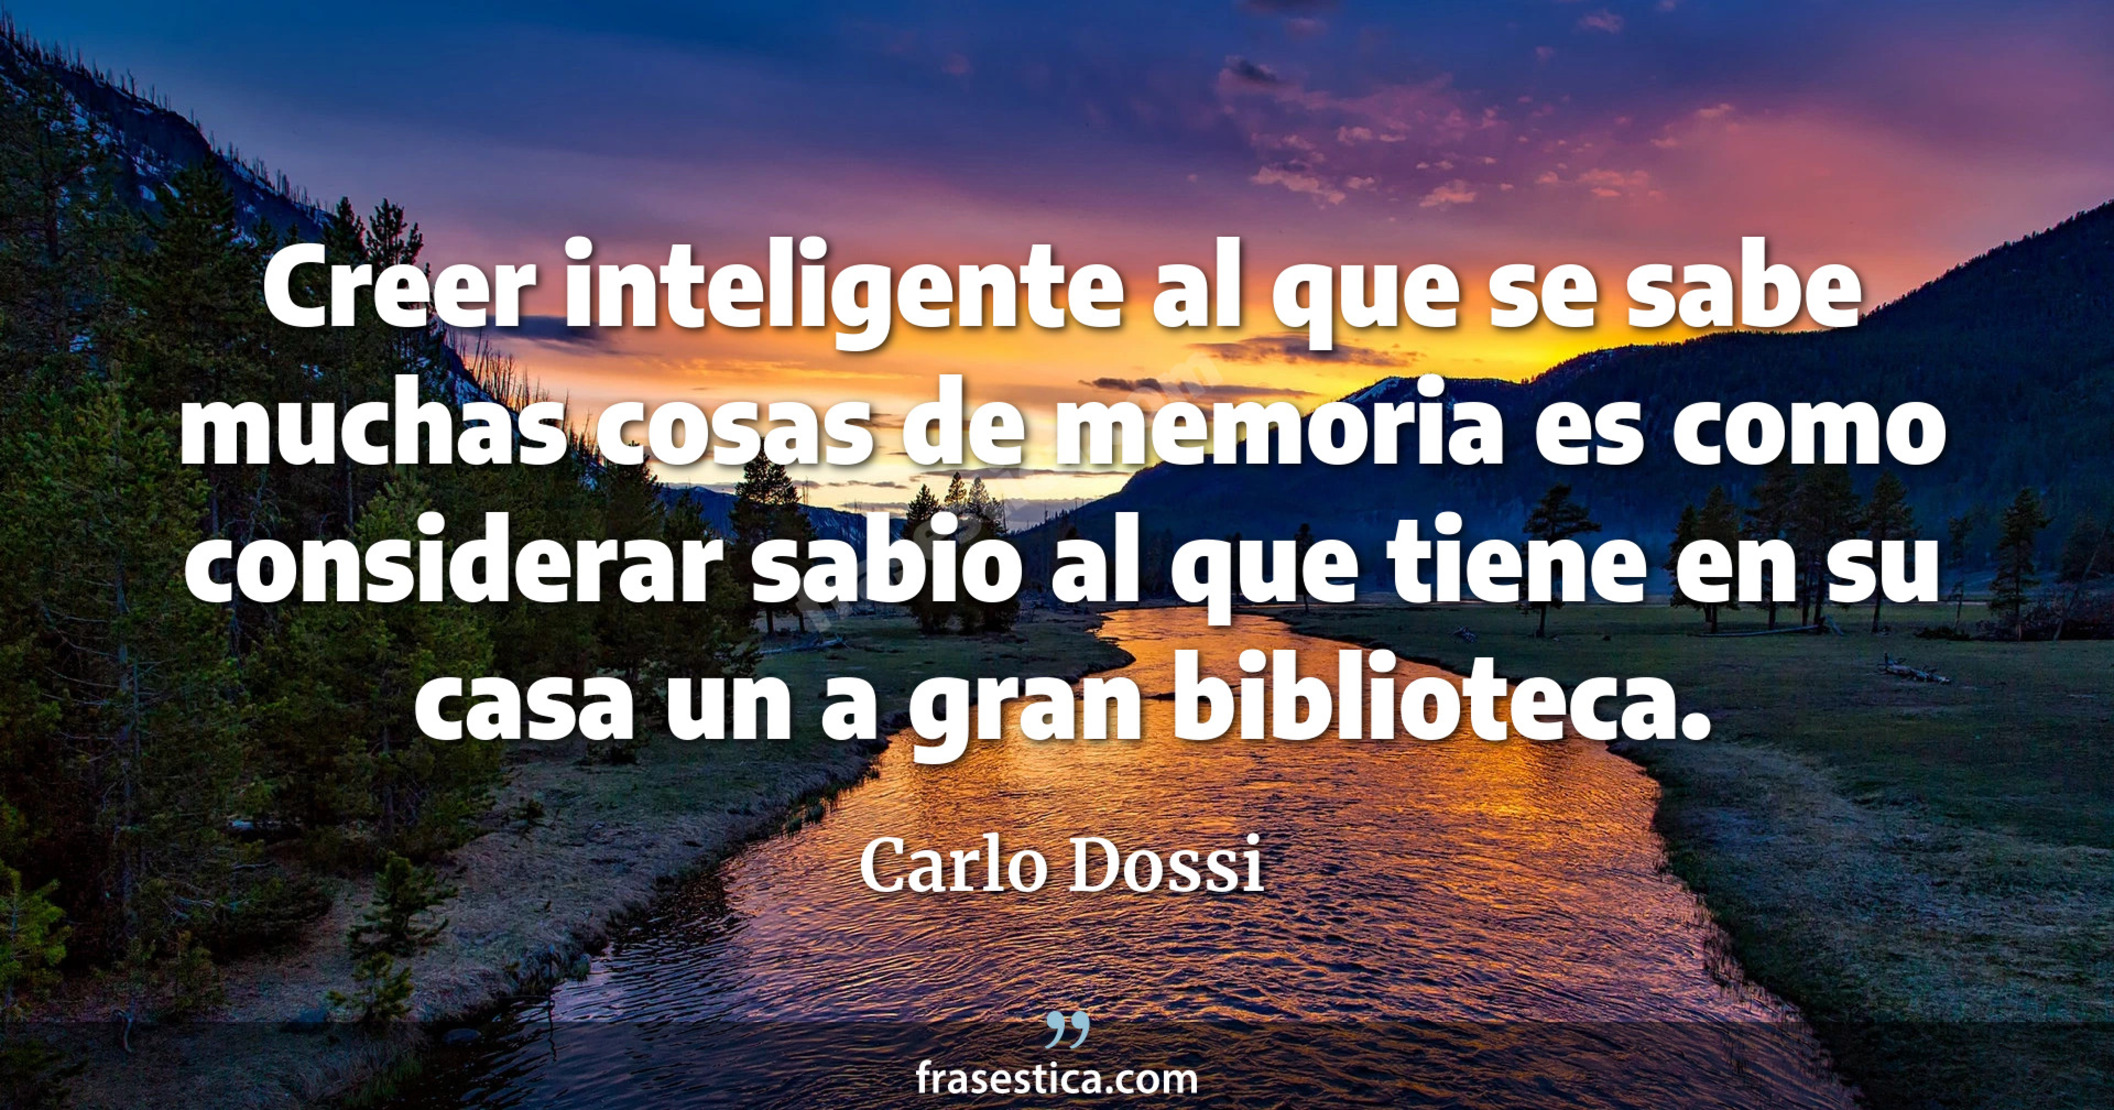 Creer inteligente al que se sabe muchas cosas de memoria es como considerar sabio al que tiene en su casa un a gran biblioteca. - Carlo Dossi